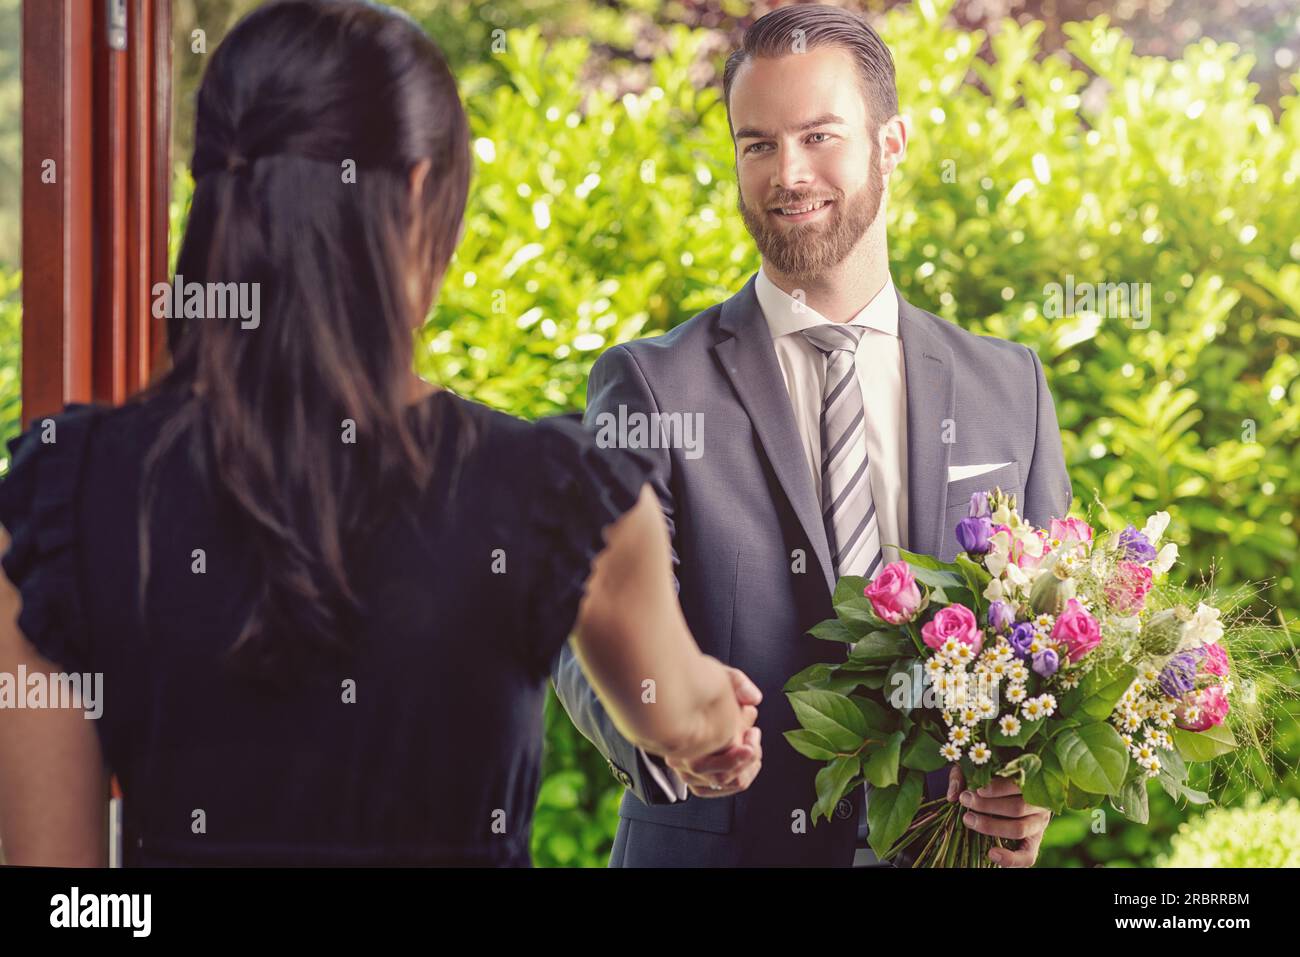 Der gutaussehende Bärtige gibt seiner Freundin einen Strauß frischer Blumen mit Happy Facial Expression Stockfoto